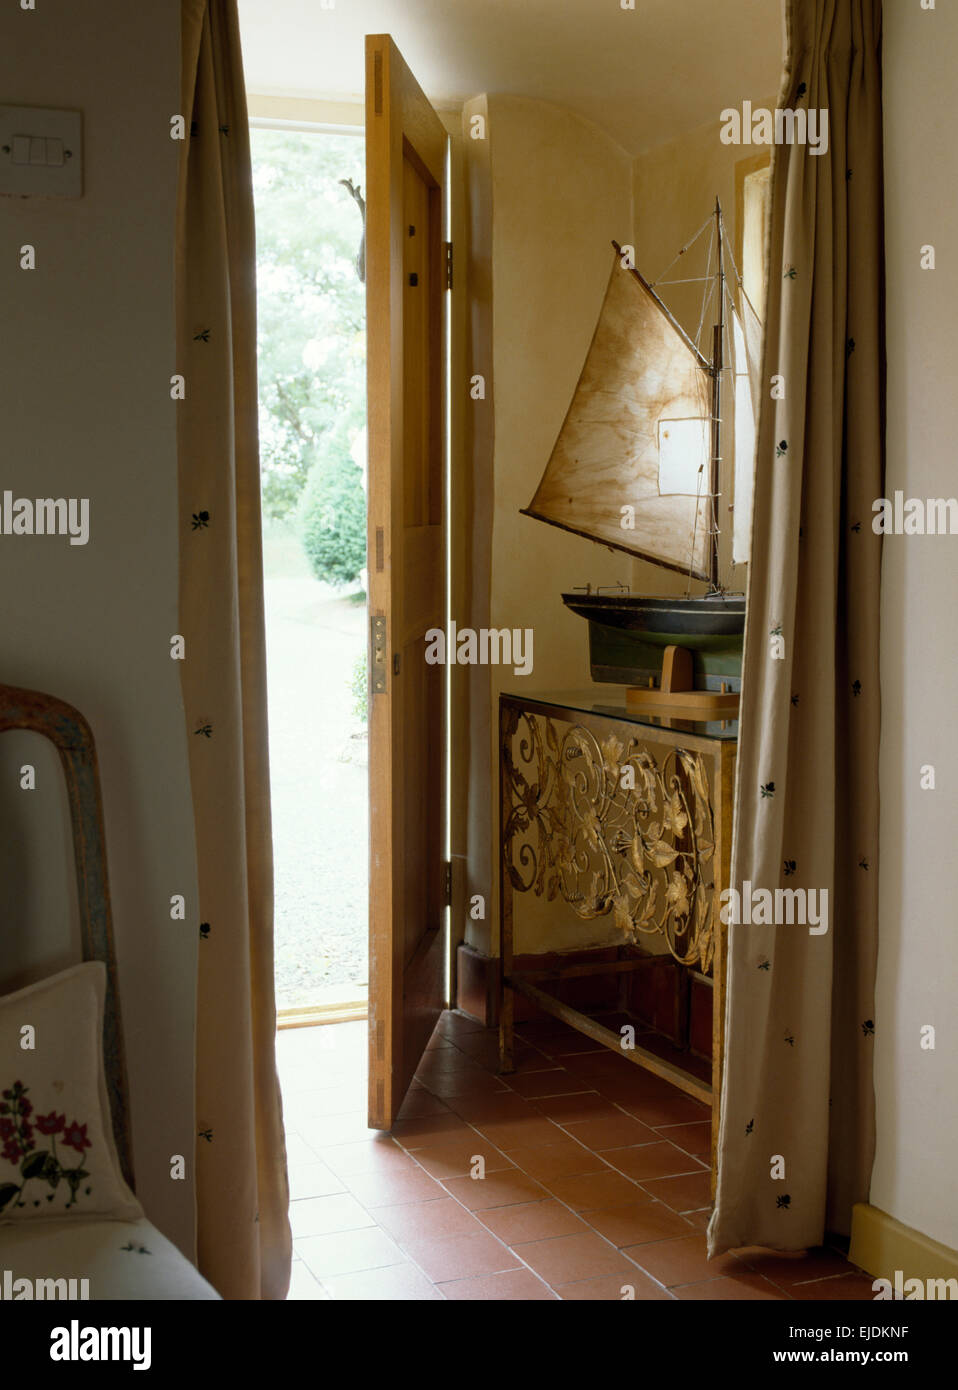 Offene Tür im kleinen Saal mit Modell Schiff verzierten Metall Konsolentisch Stockfoto